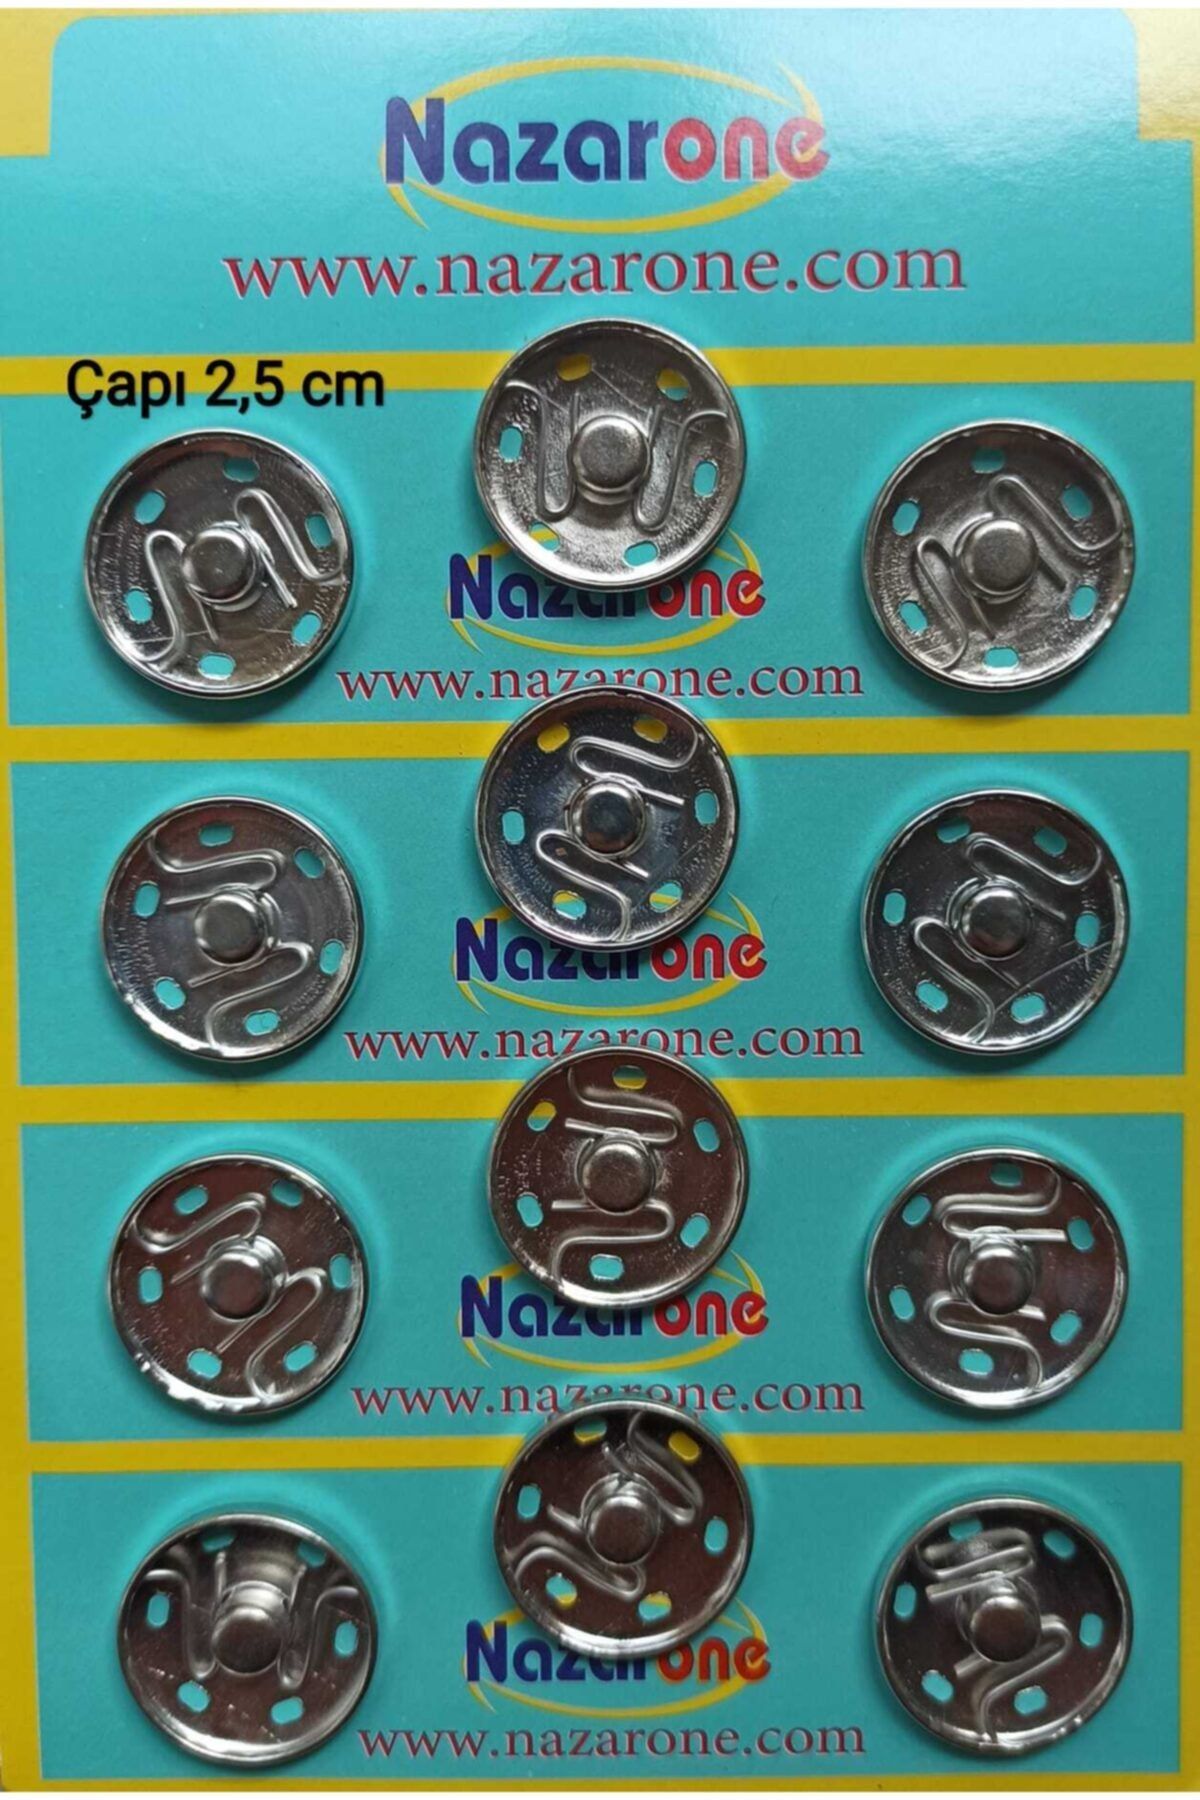 Bemsa Nazarone Çıtçıt Düğme Metal Çapı 2,5 Cm.beyaz Renk.1 Paket 12 Adet